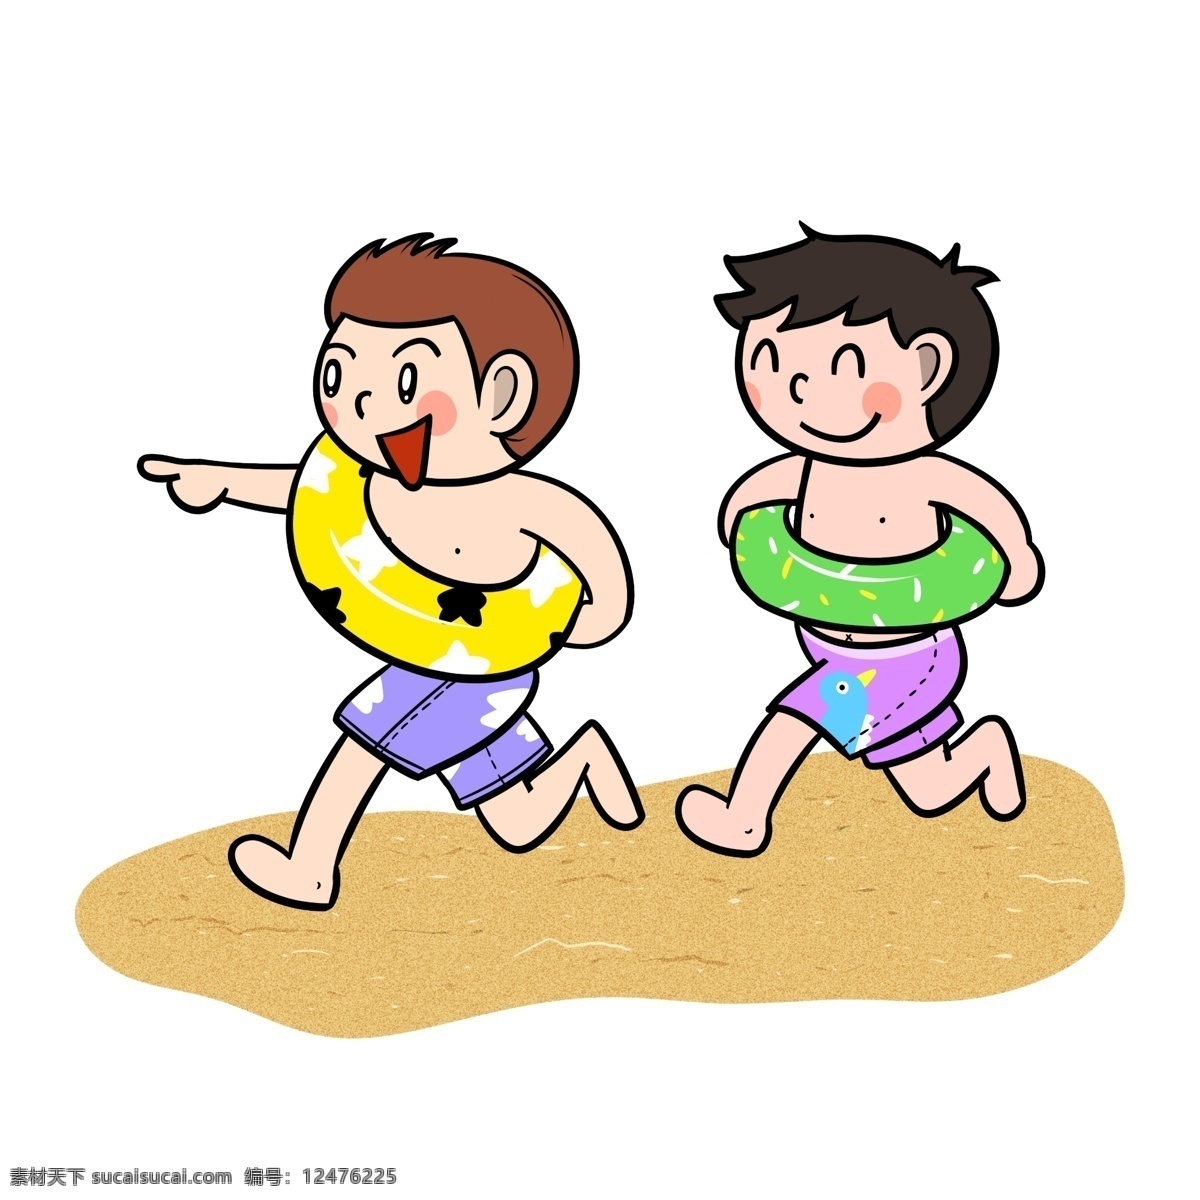 卡通 夏季 儿童 沙滩 追 闹 透明 底 夏天 玩耍 海边 海滩 海边人物 夏季人物 夏天人物 卡通人物 卡通夏季